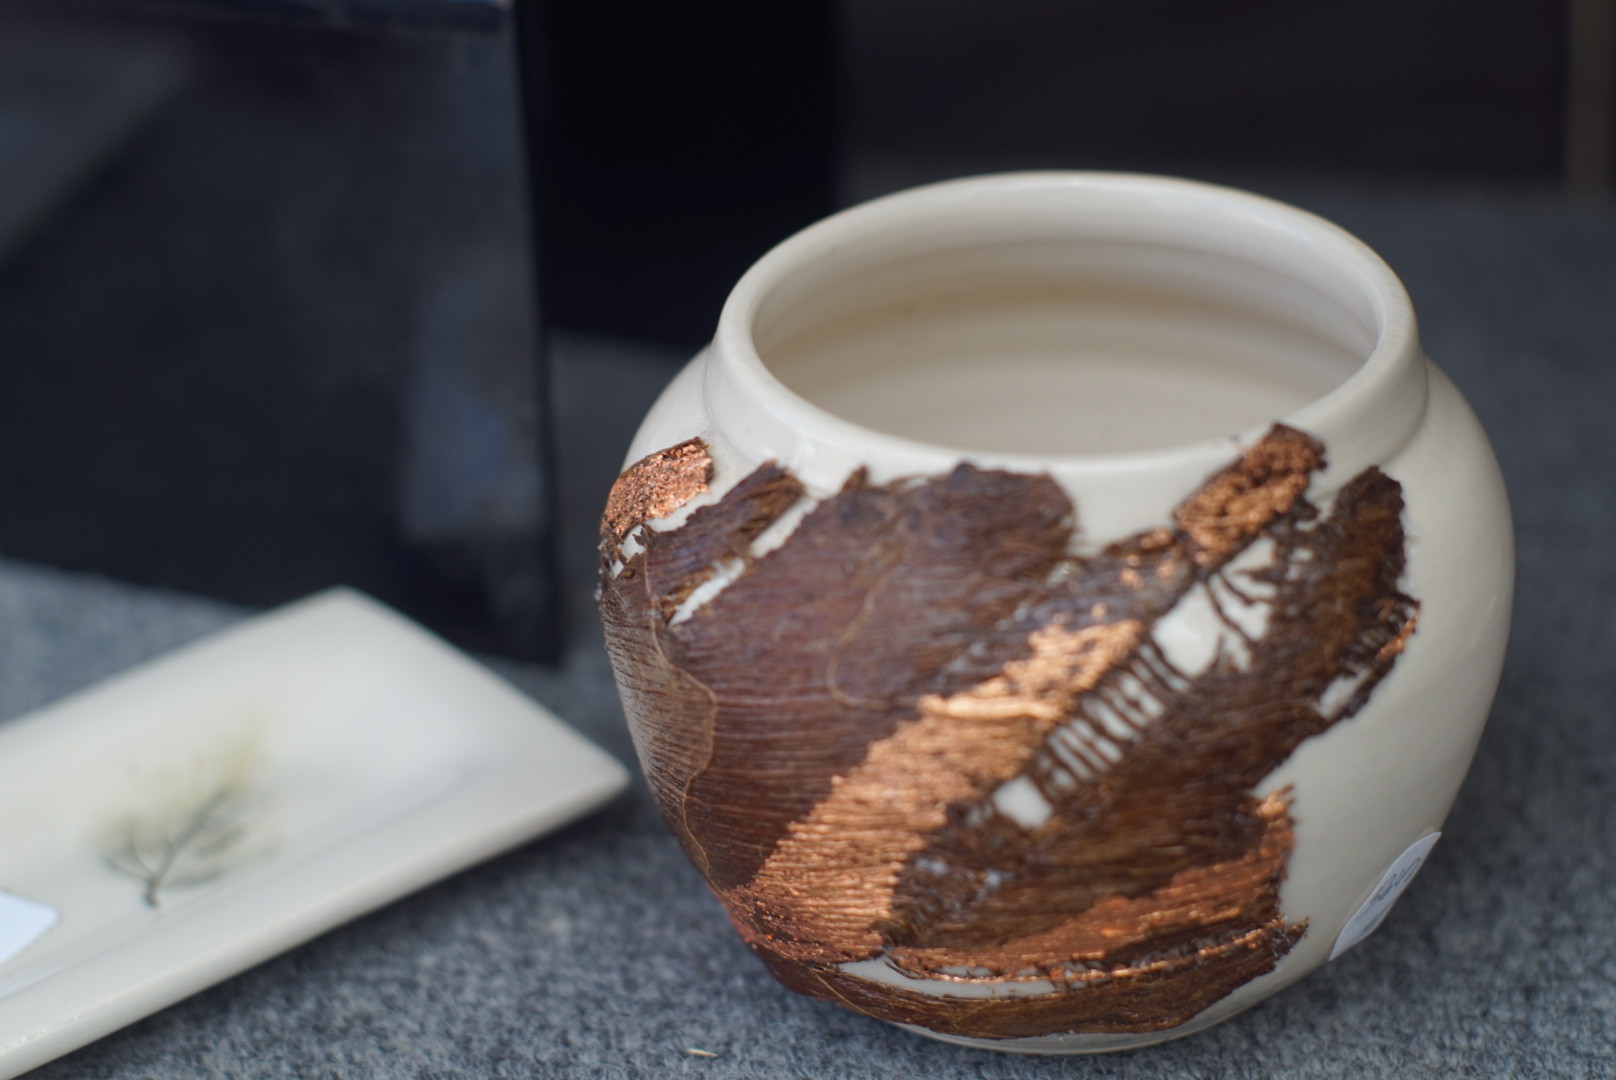 Pottery by Mina Heuslein